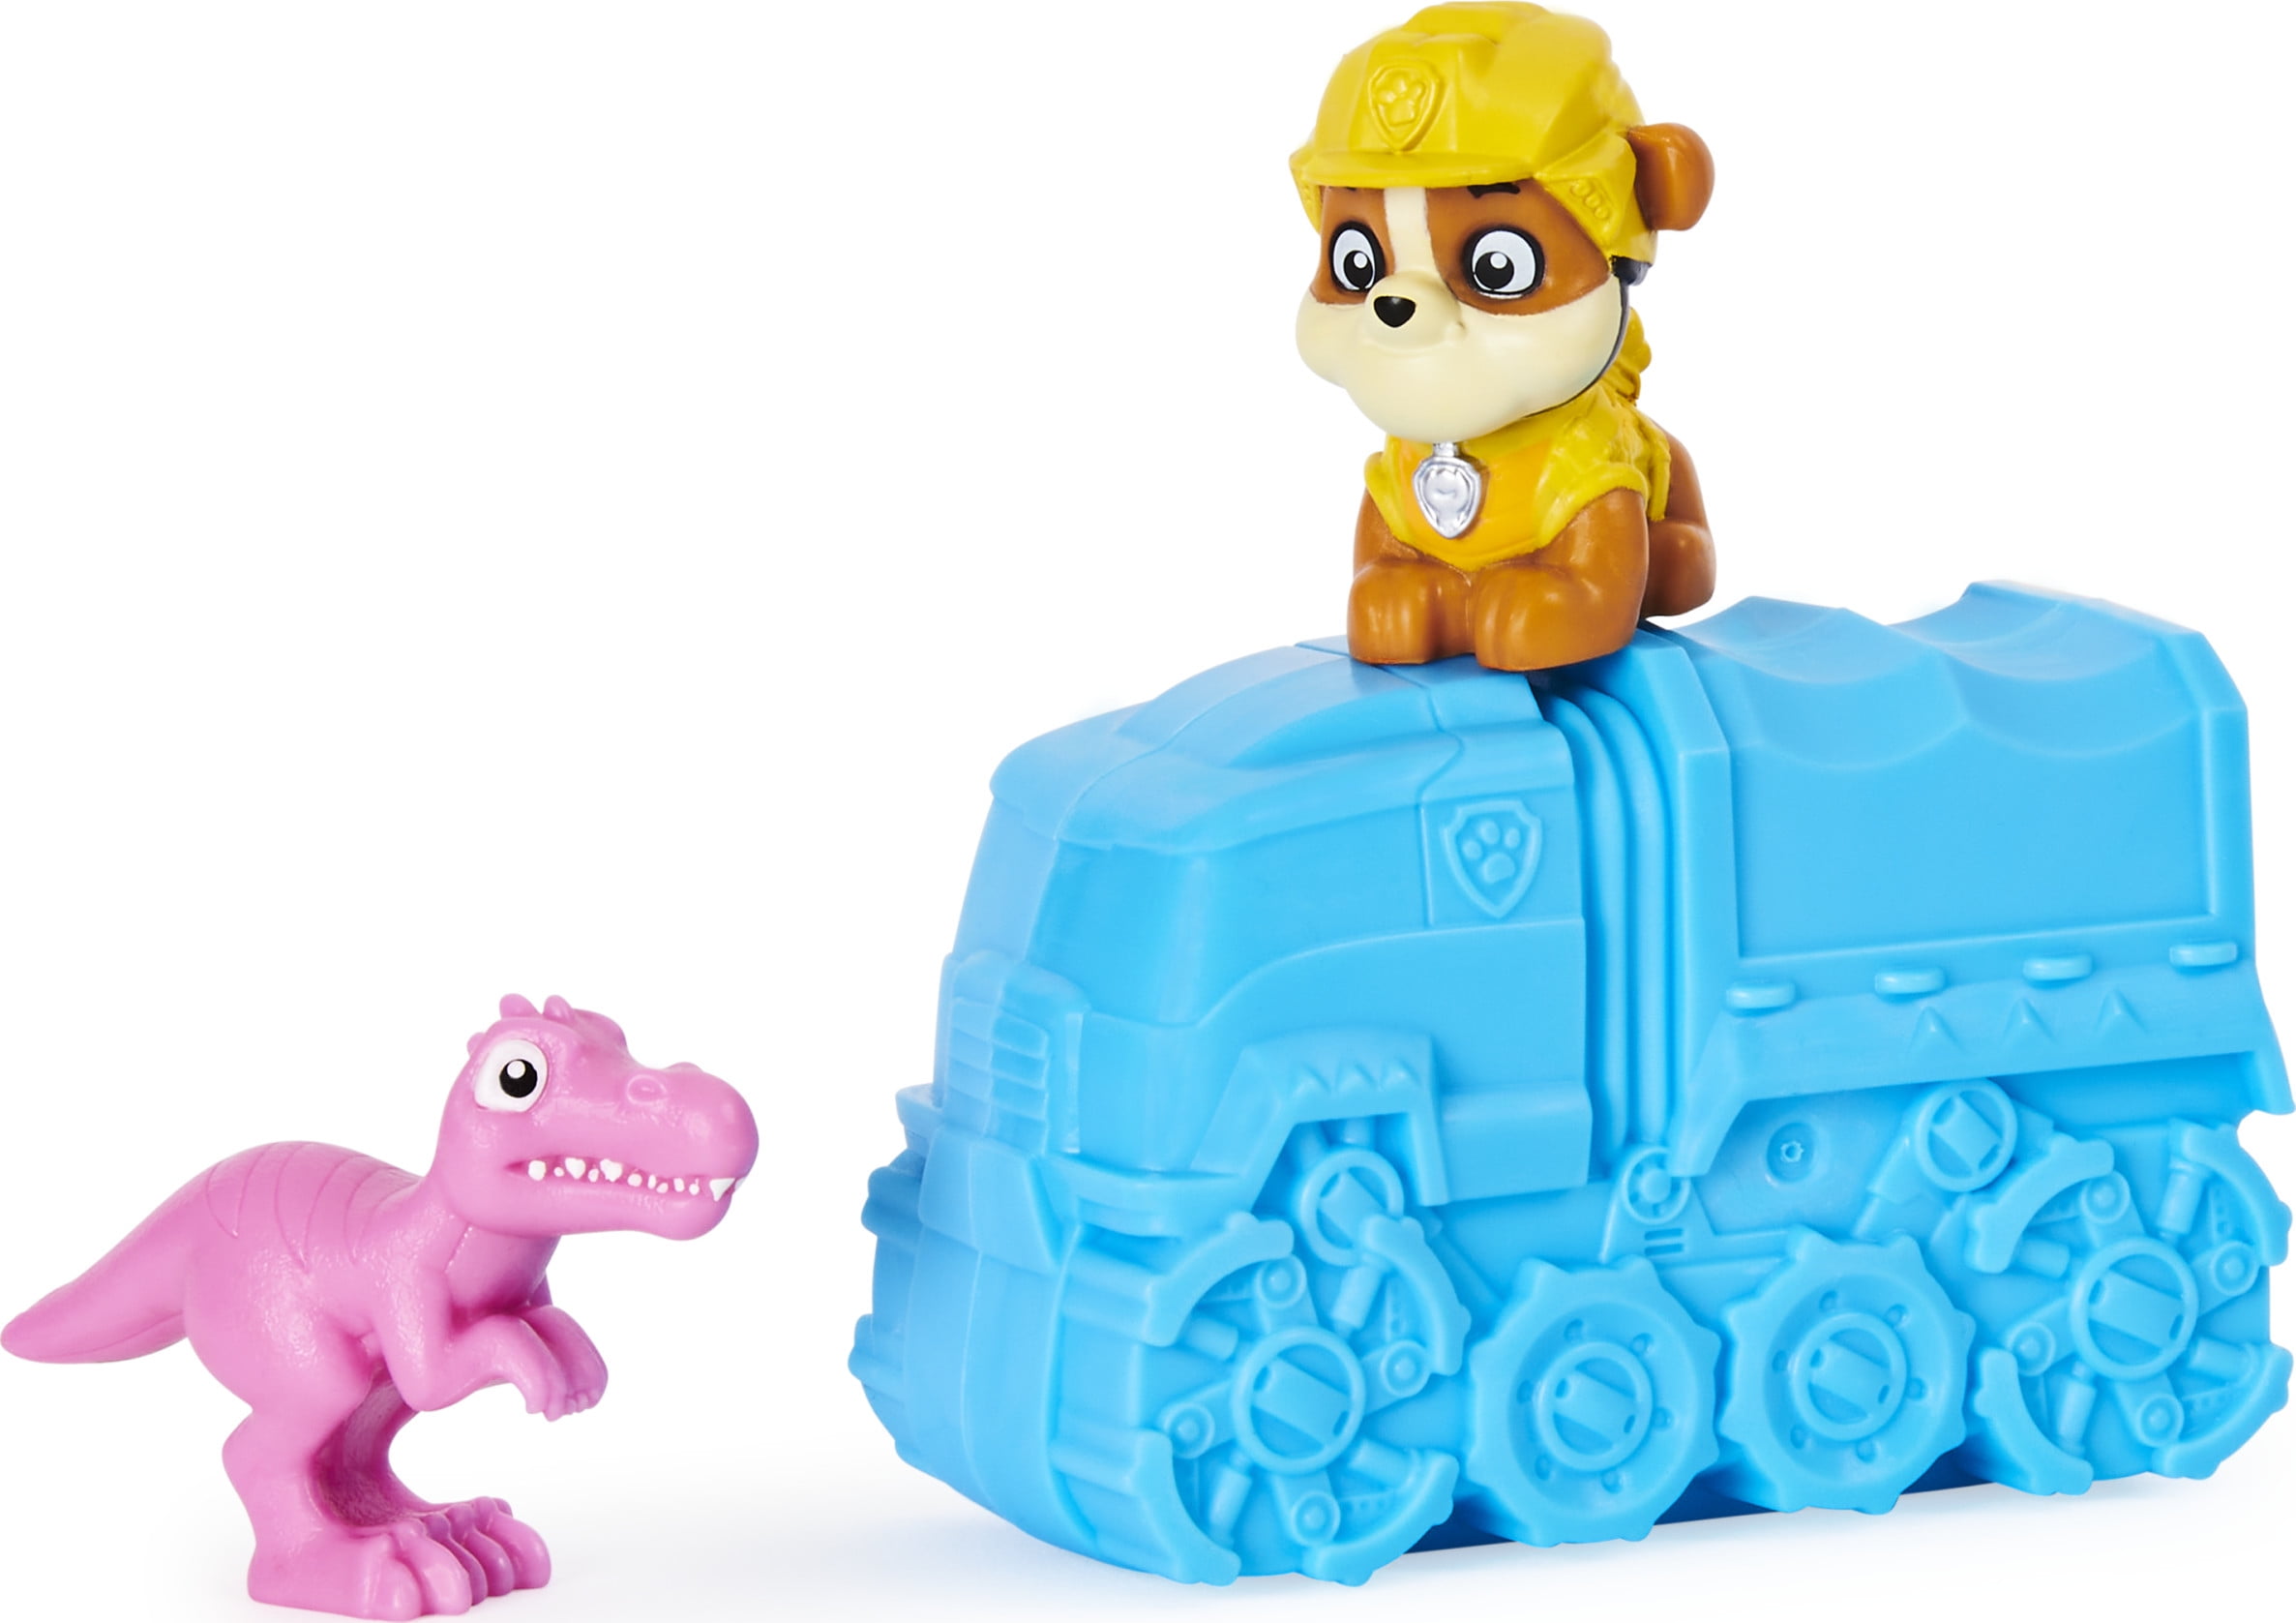 Paw Patrol Dino Rescue Set Kids Toys Birthday Gift 3 Dinosaur Mystery Dinosaur 